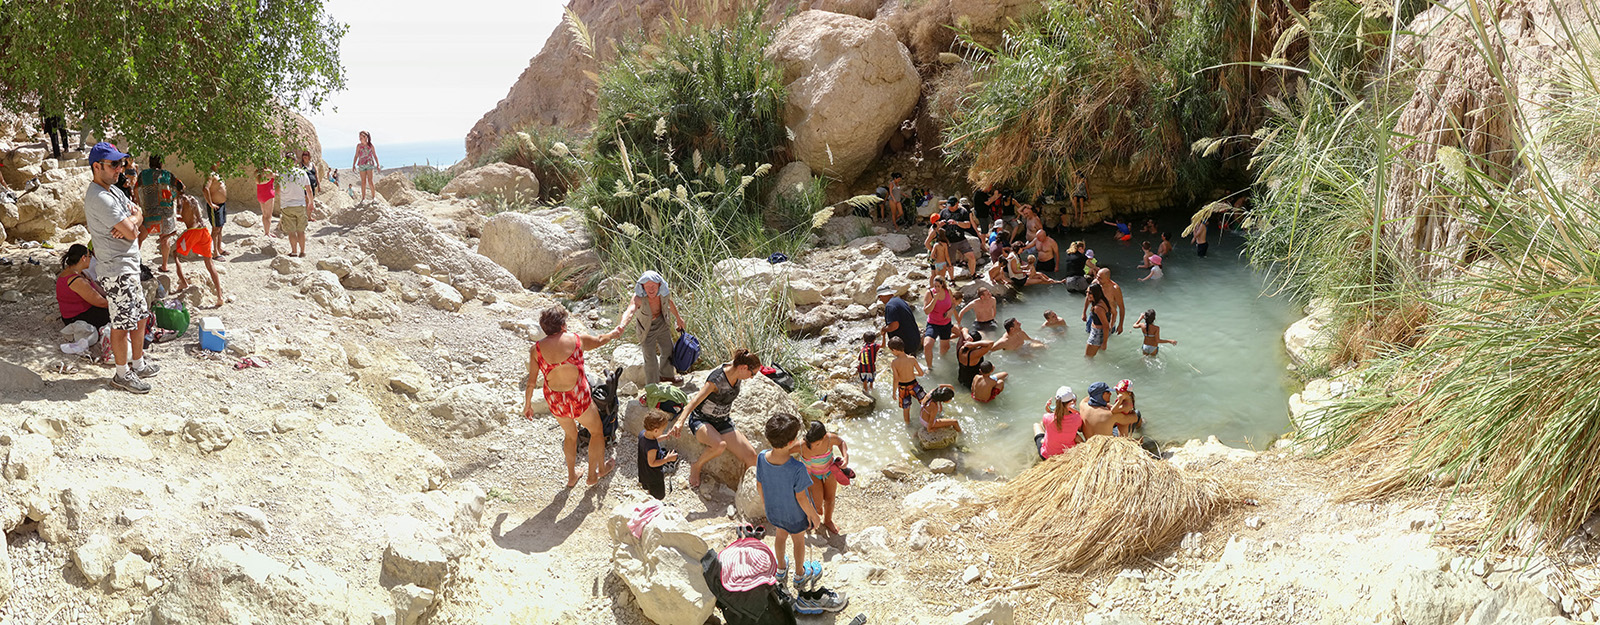 בישראל, כל אגם, נחל ושלולית חורף מהווים "אבן שואבת" אקזוטית לפעילות כחלק מתרבות הפנאי (צילום: שי בן אפרים / צלם עצמאי. באדיבות תערוכת עדות מקומית).